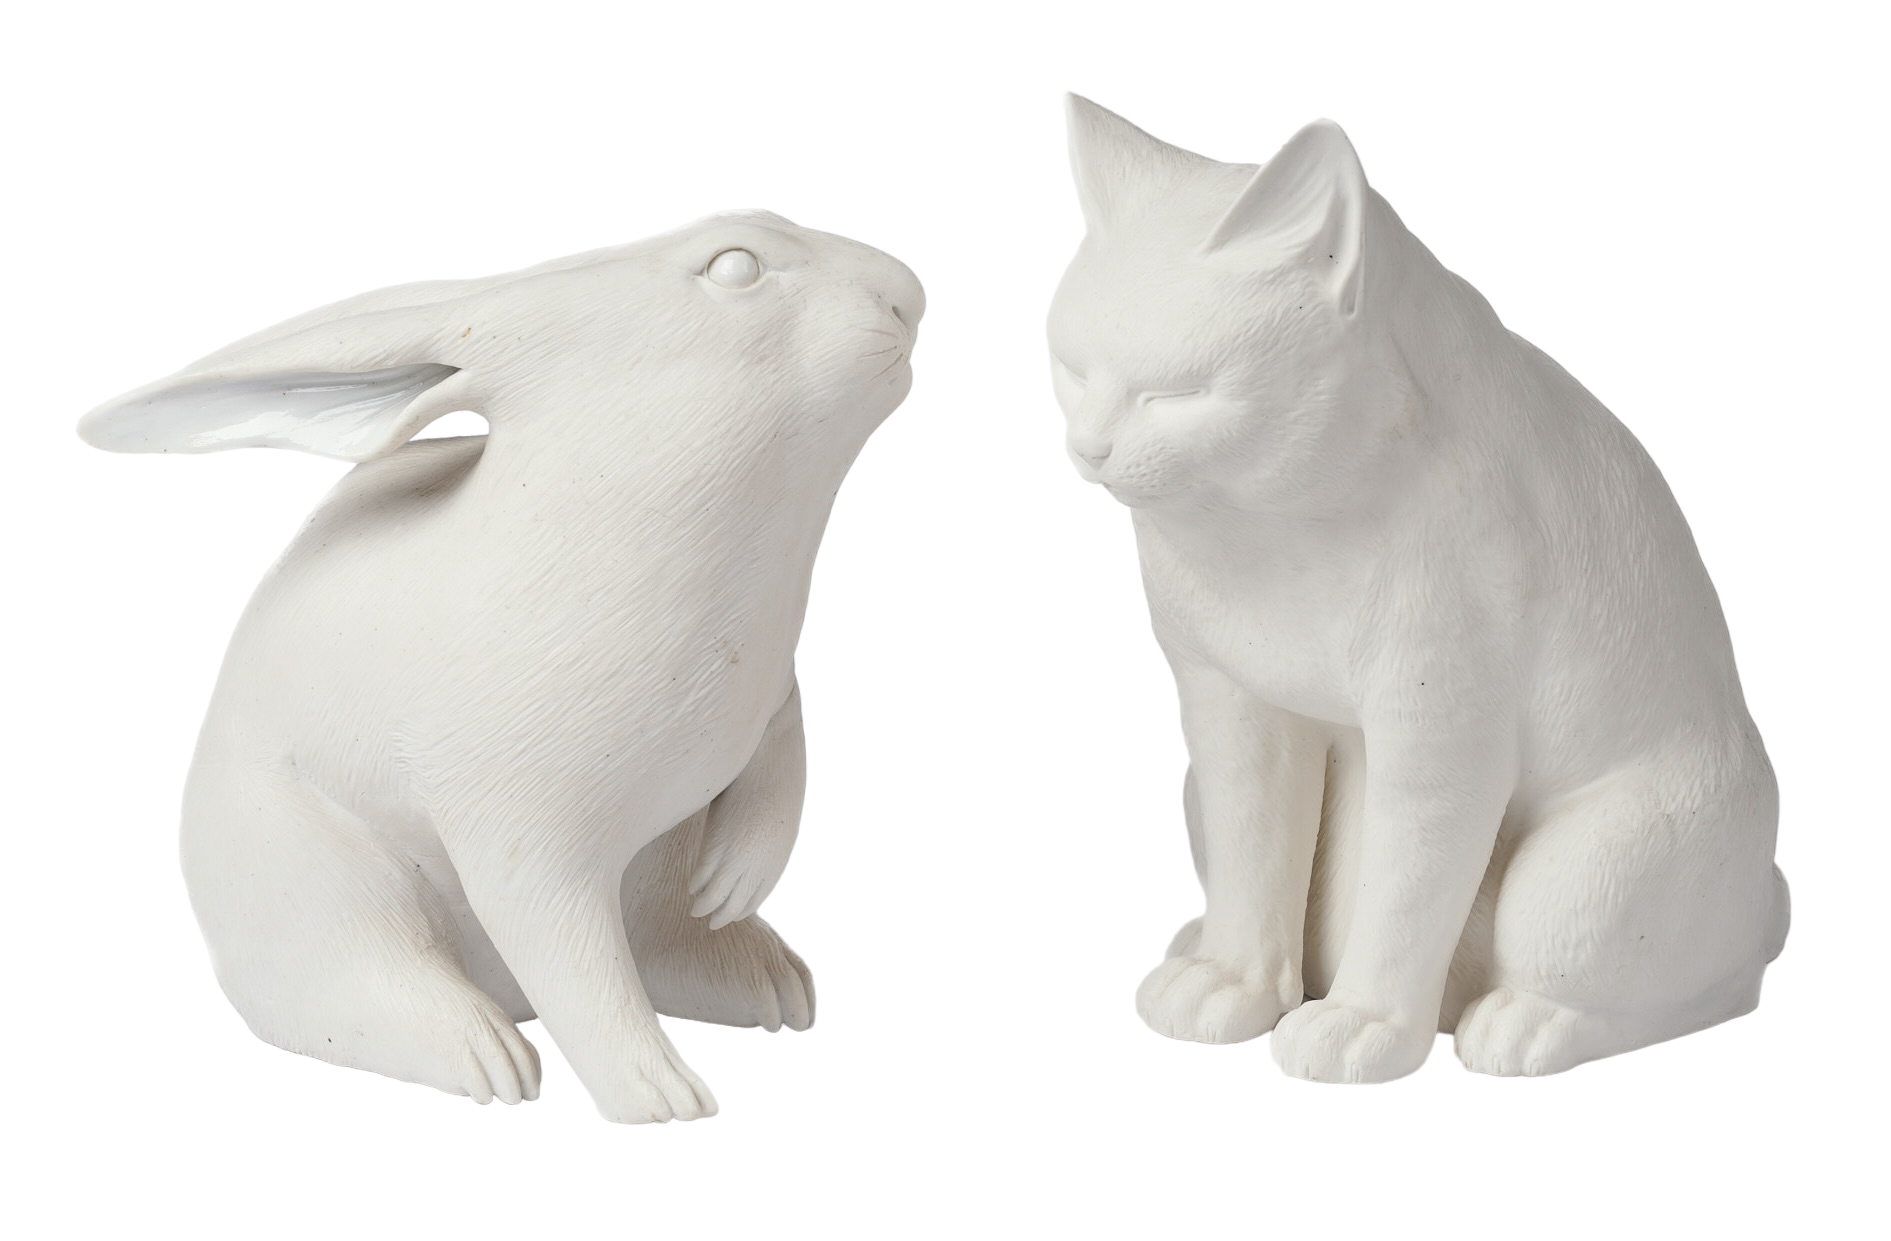 Bisque porcelain figure of a rabbit 2e206d